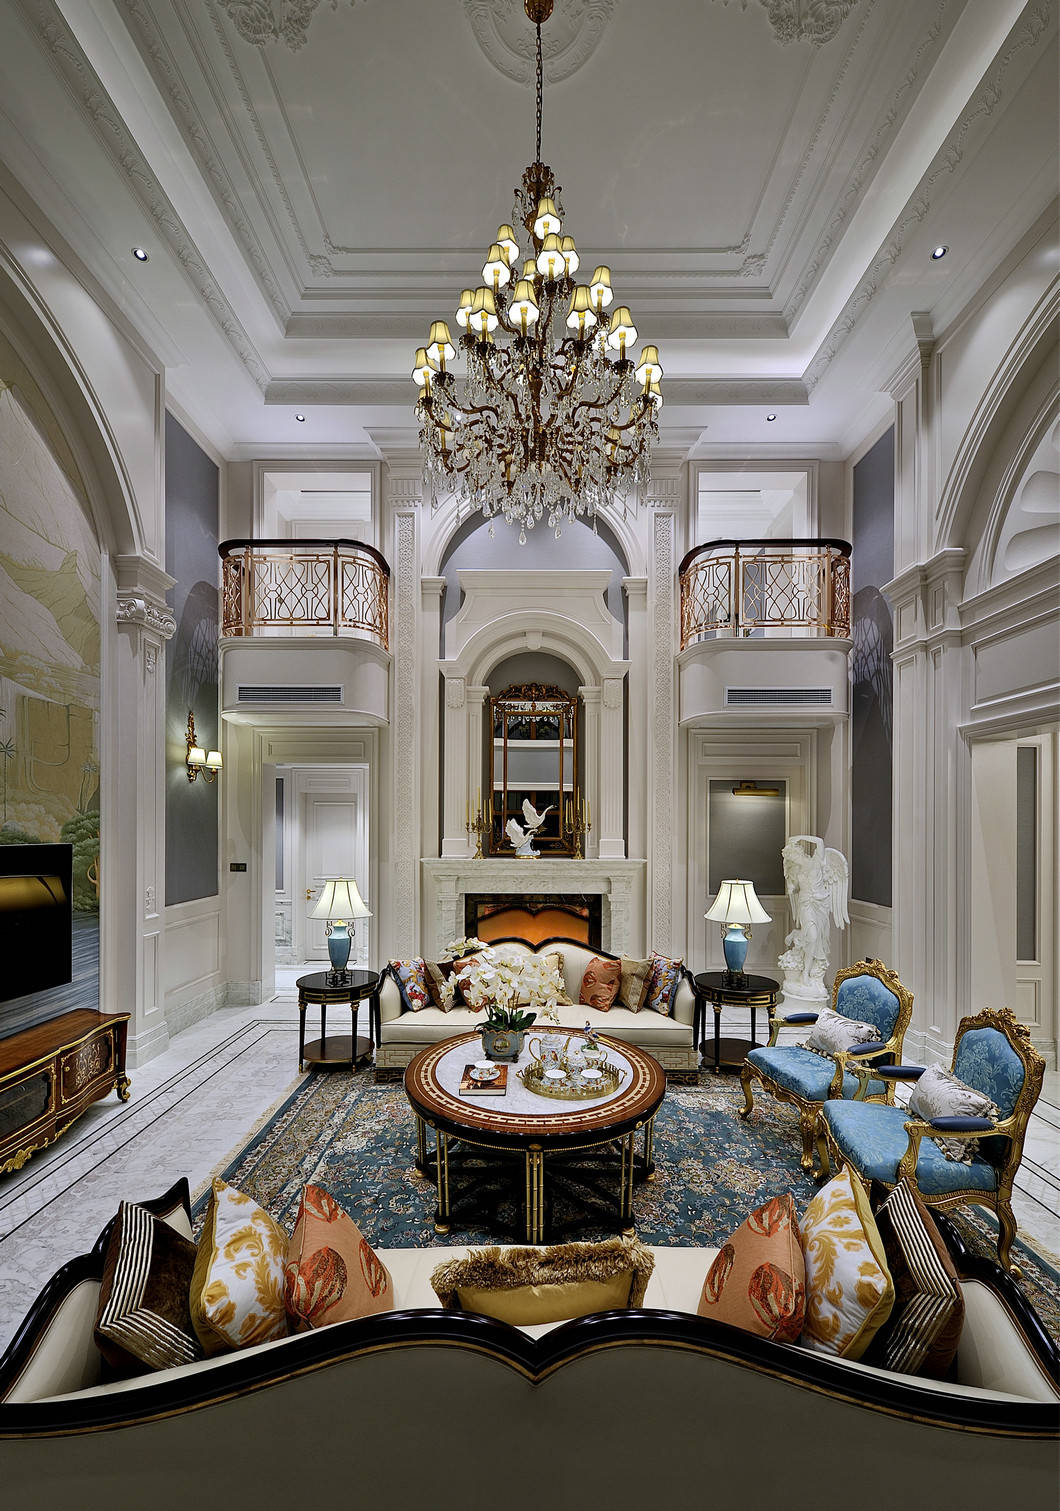 贵阳欧式别墅室内装修,欧式风格将高贵与典雅演绎得淋漓尽致!